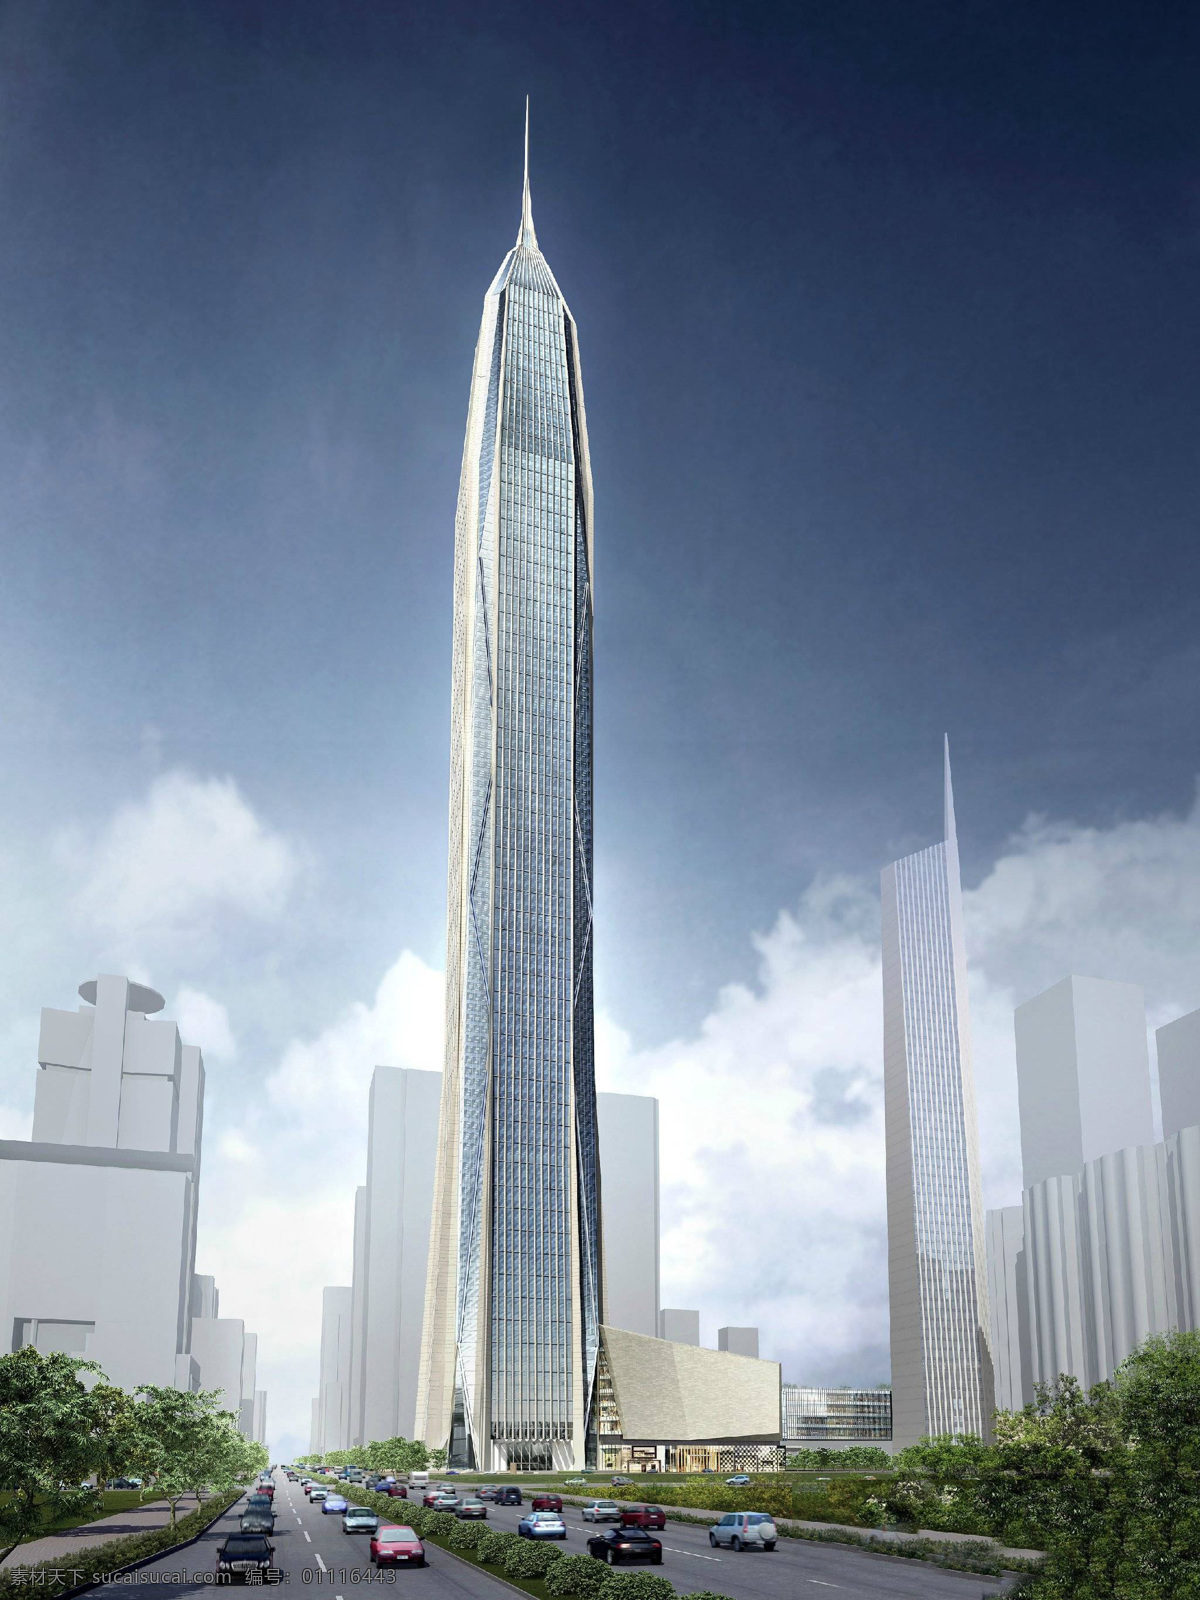 平安大厦 建筑设计 高层建筑 摩天大楼 超高层建筑 建筑规划 城市建筑 现代建筑 建筑效果图 效果图设计 3d设计 3d作品